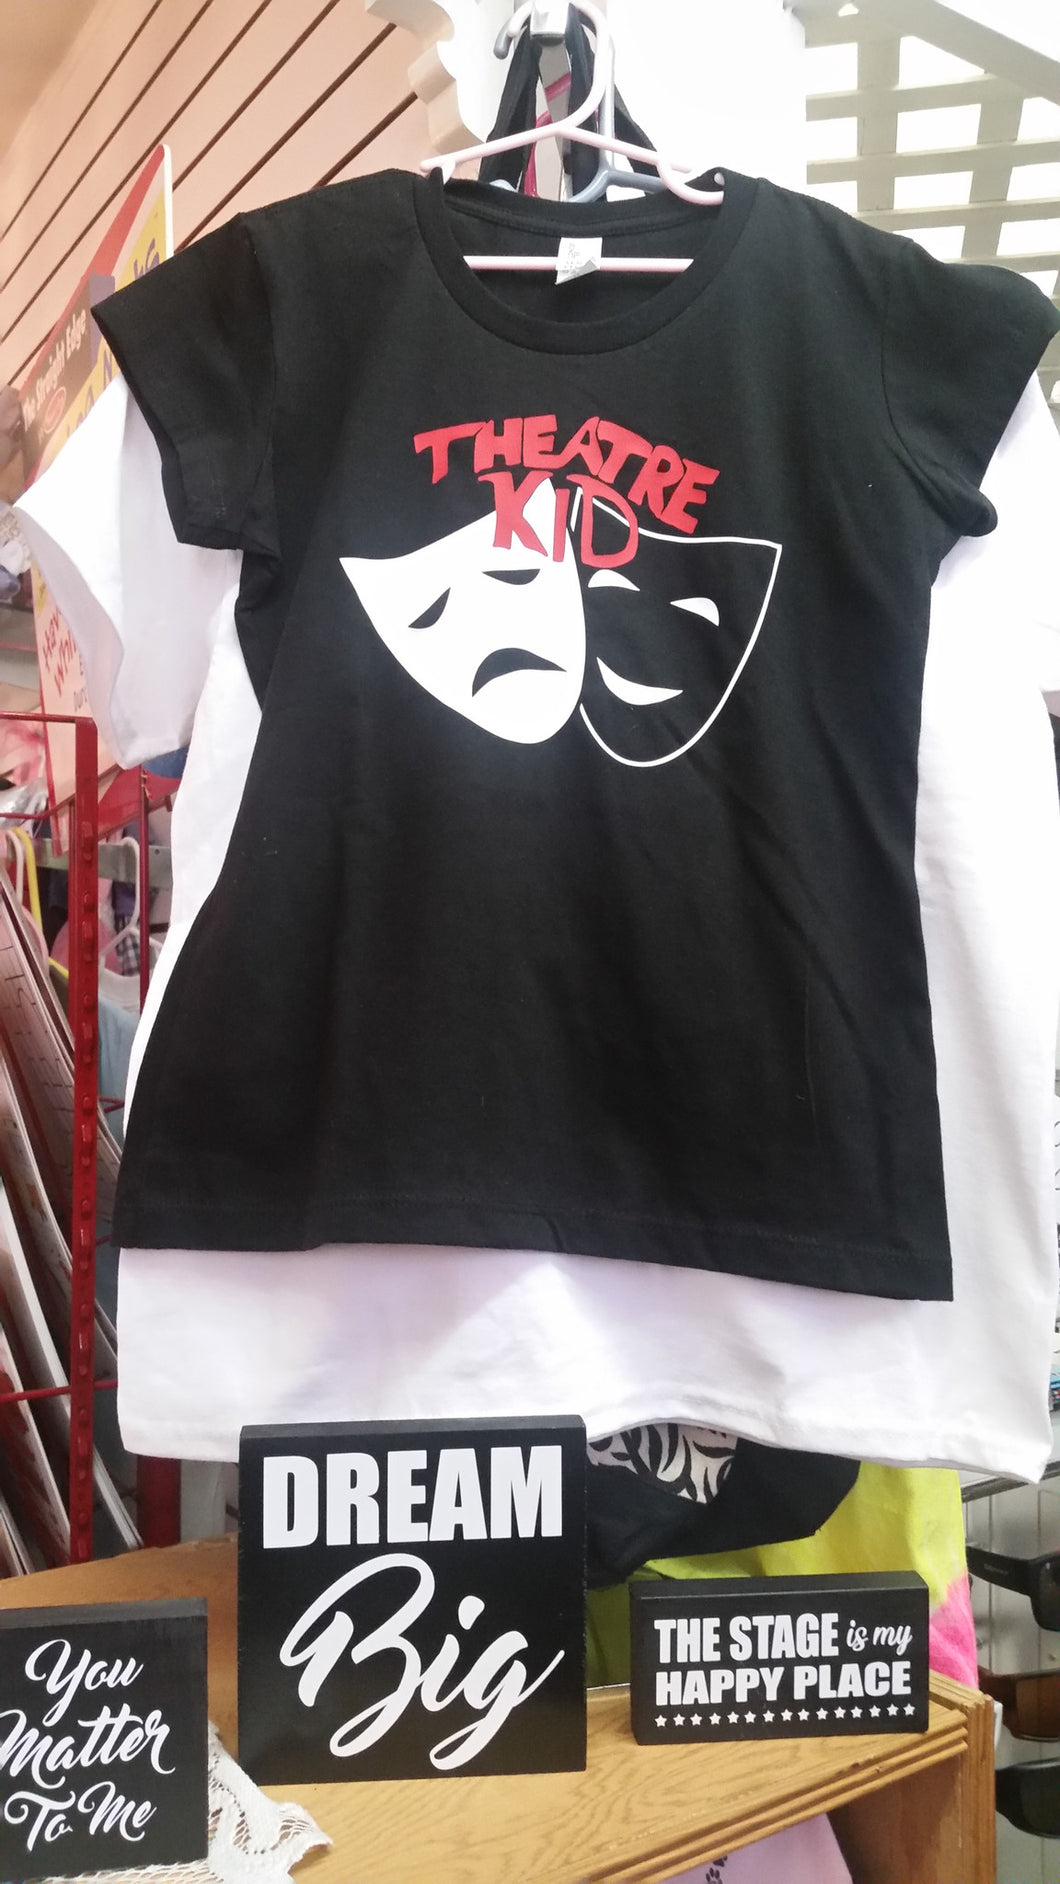 Theatre Kid T-Shirt